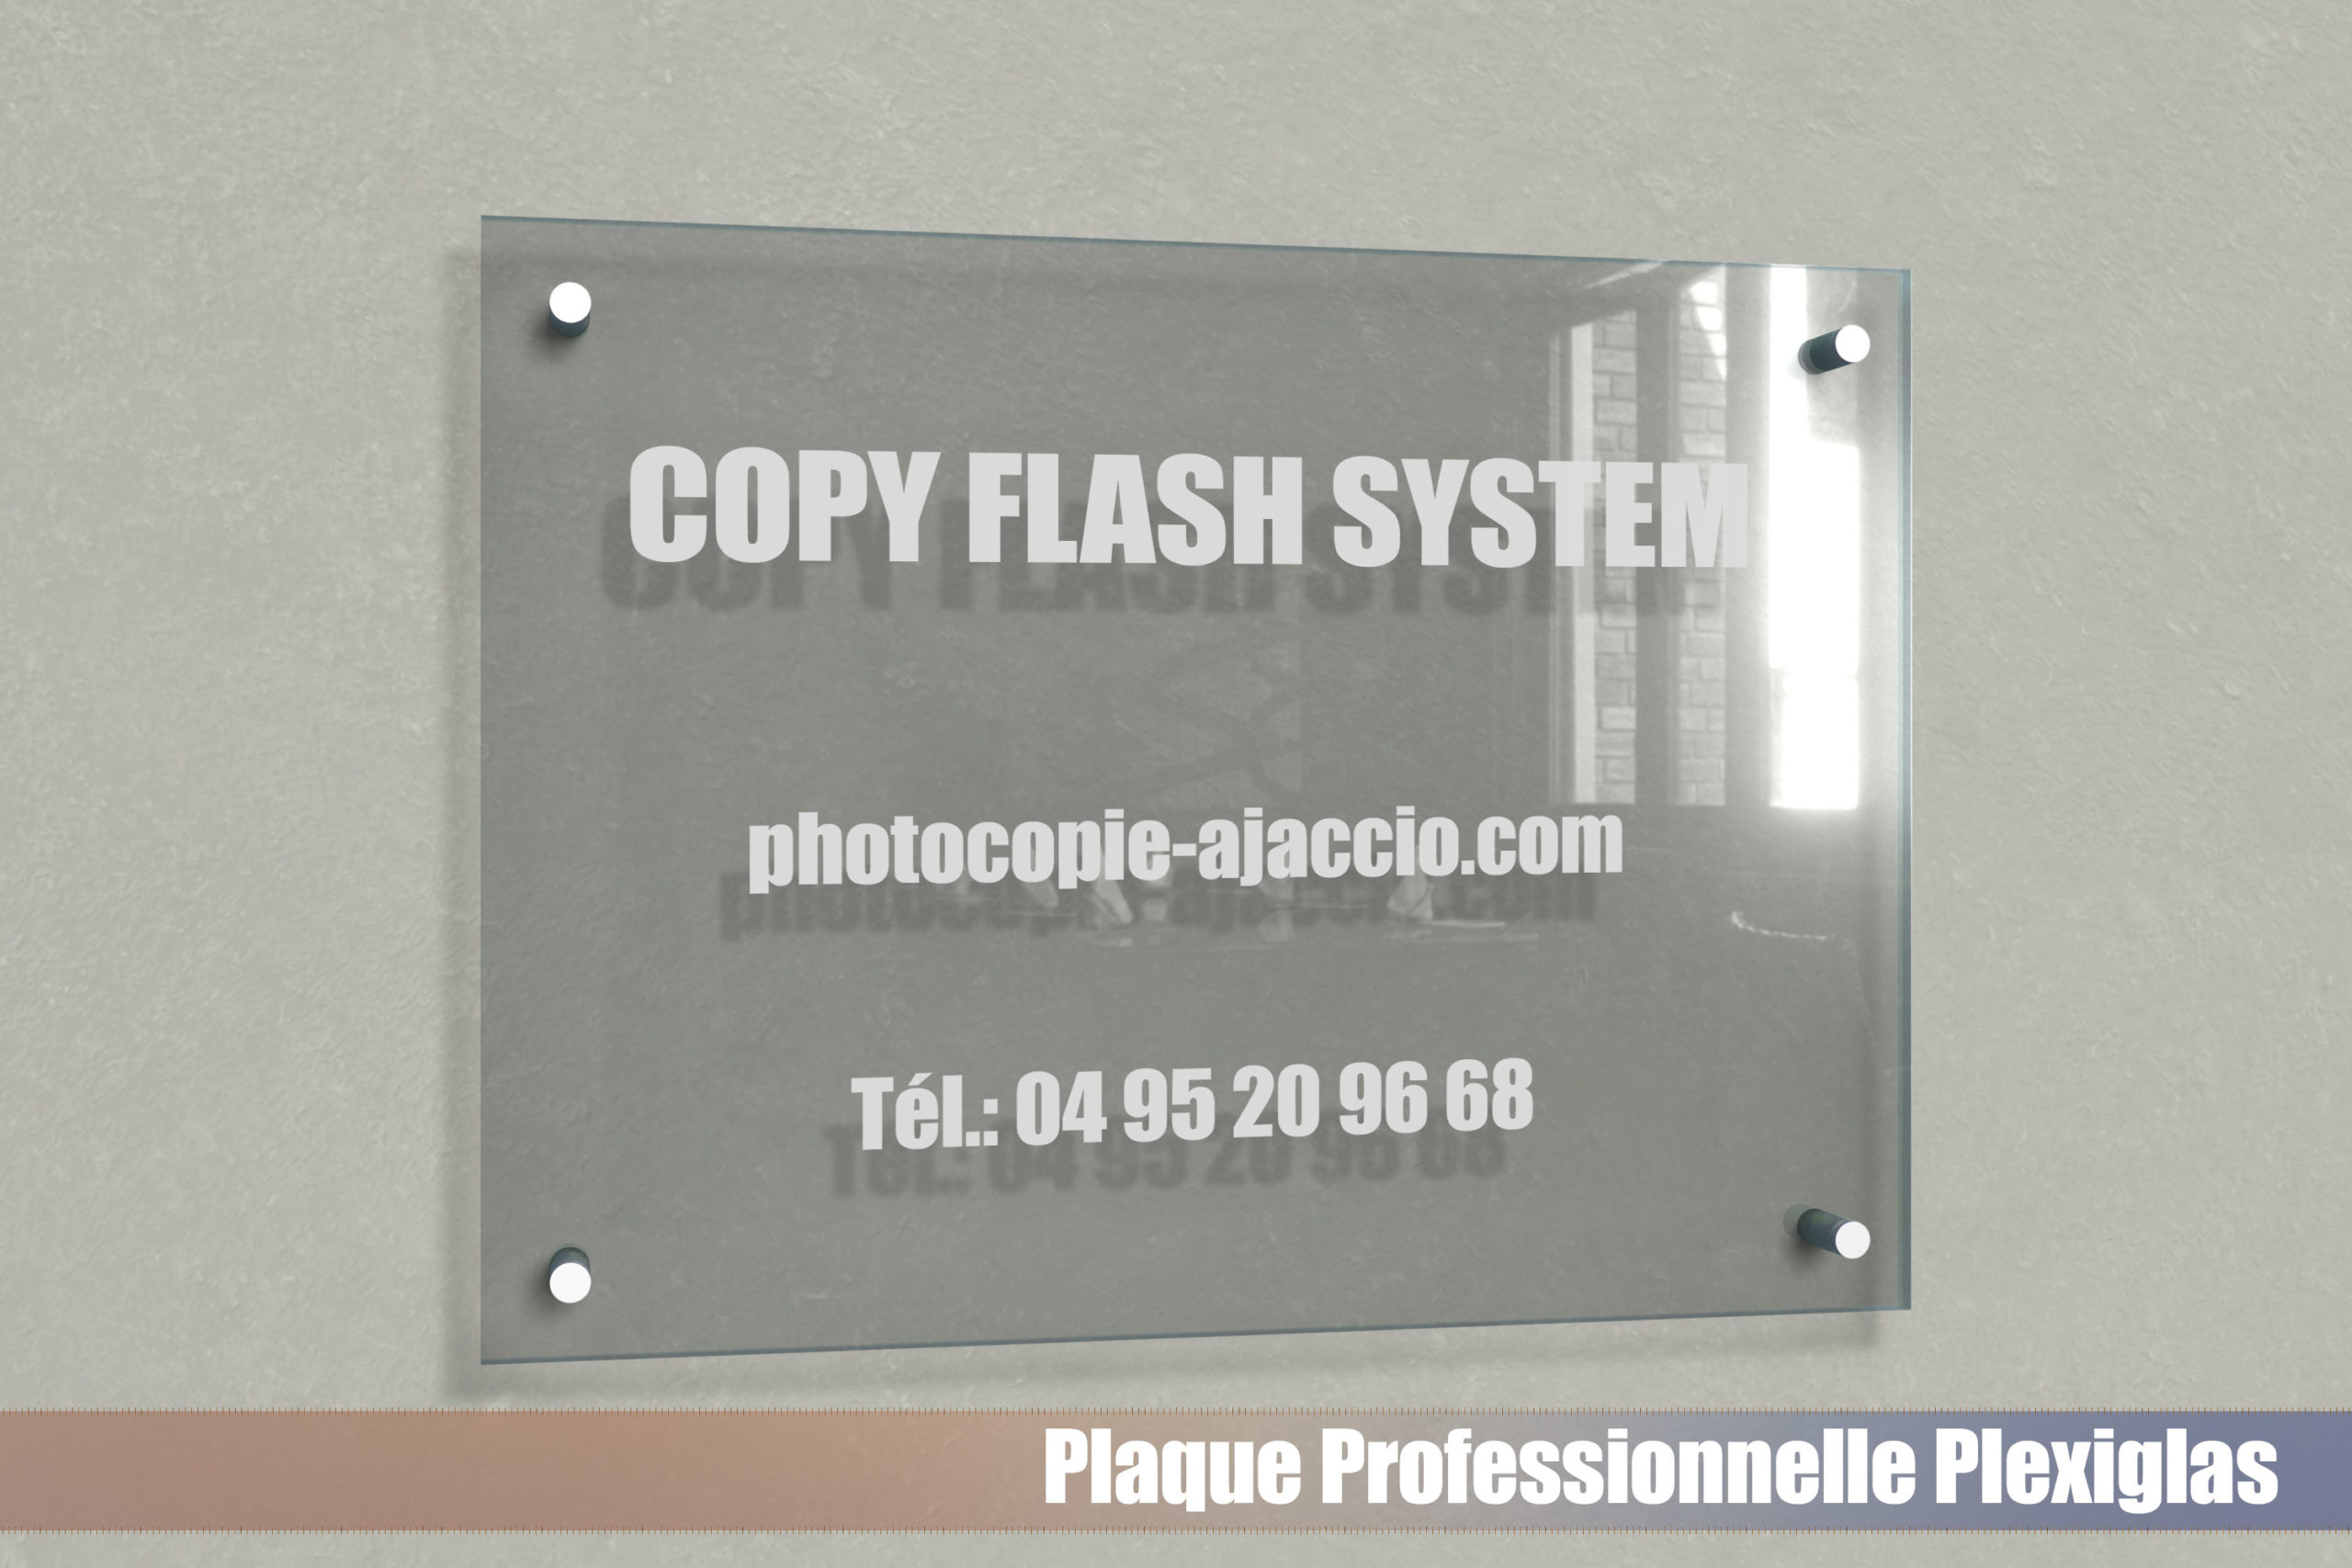 Plaque professionnelle plexiglas transparent. - Copy Flash System